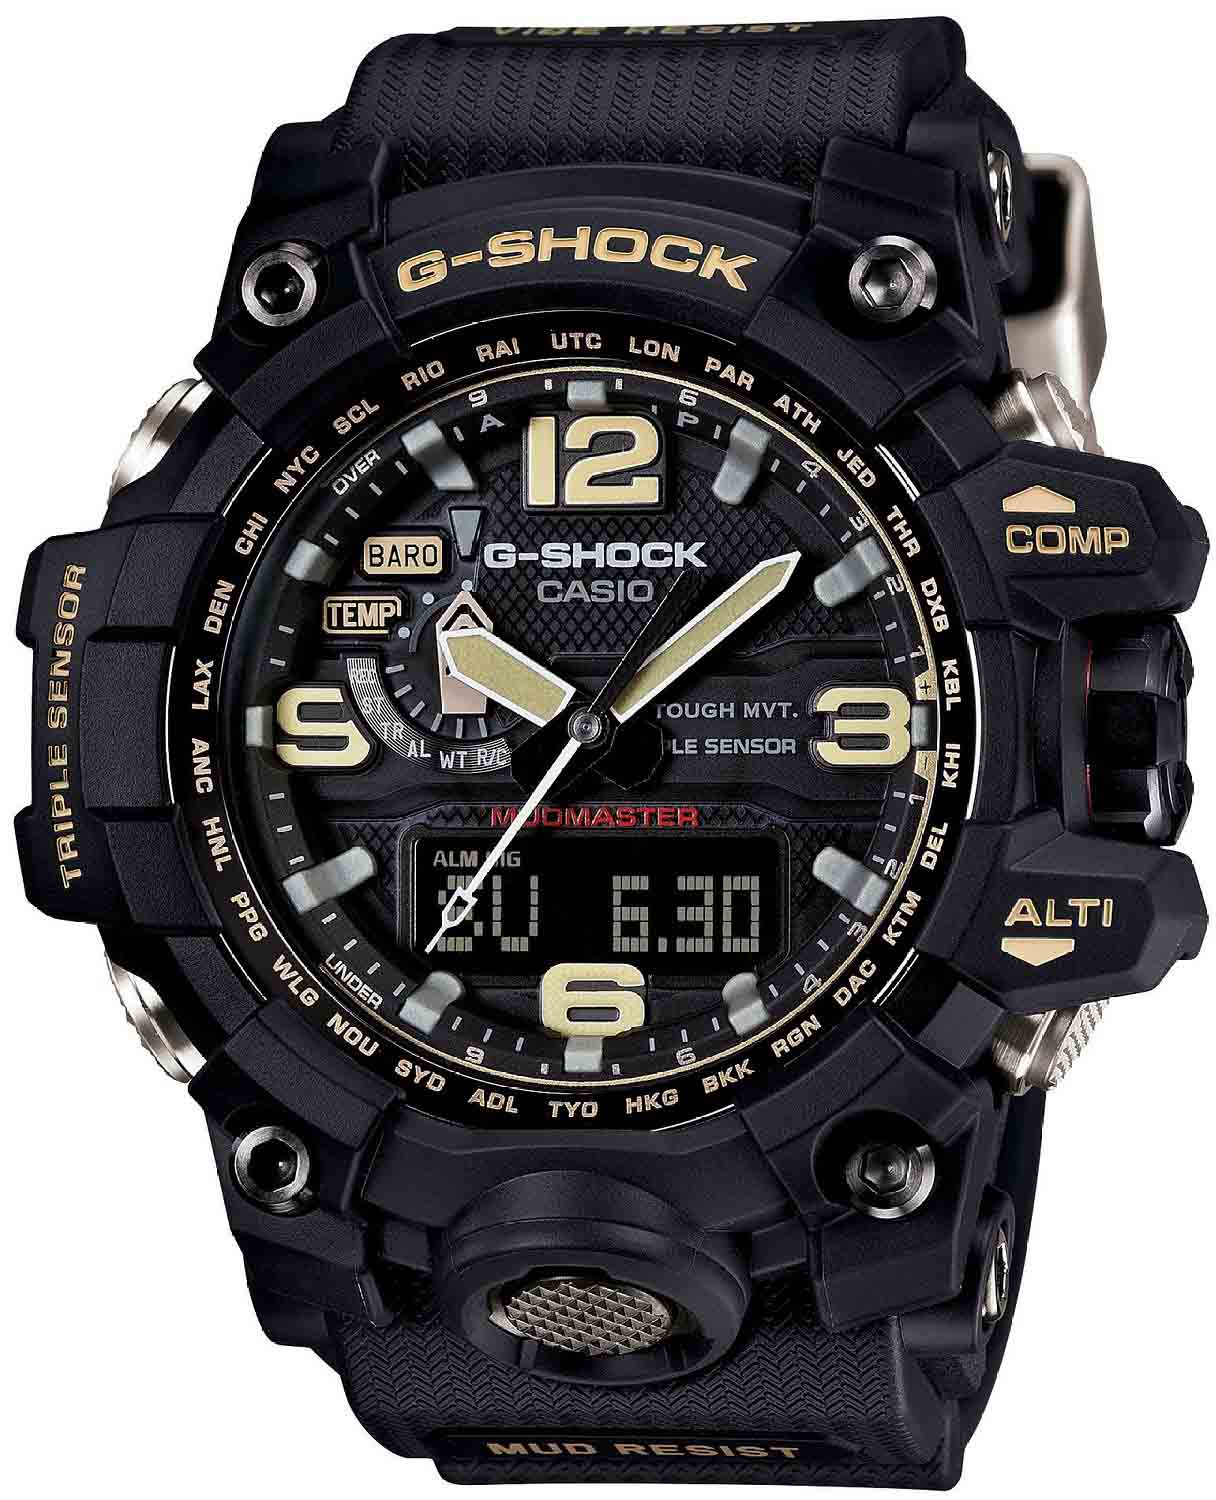 Casio G-Shock GWG-1000-1A9DR Watch price in Pakistan ...